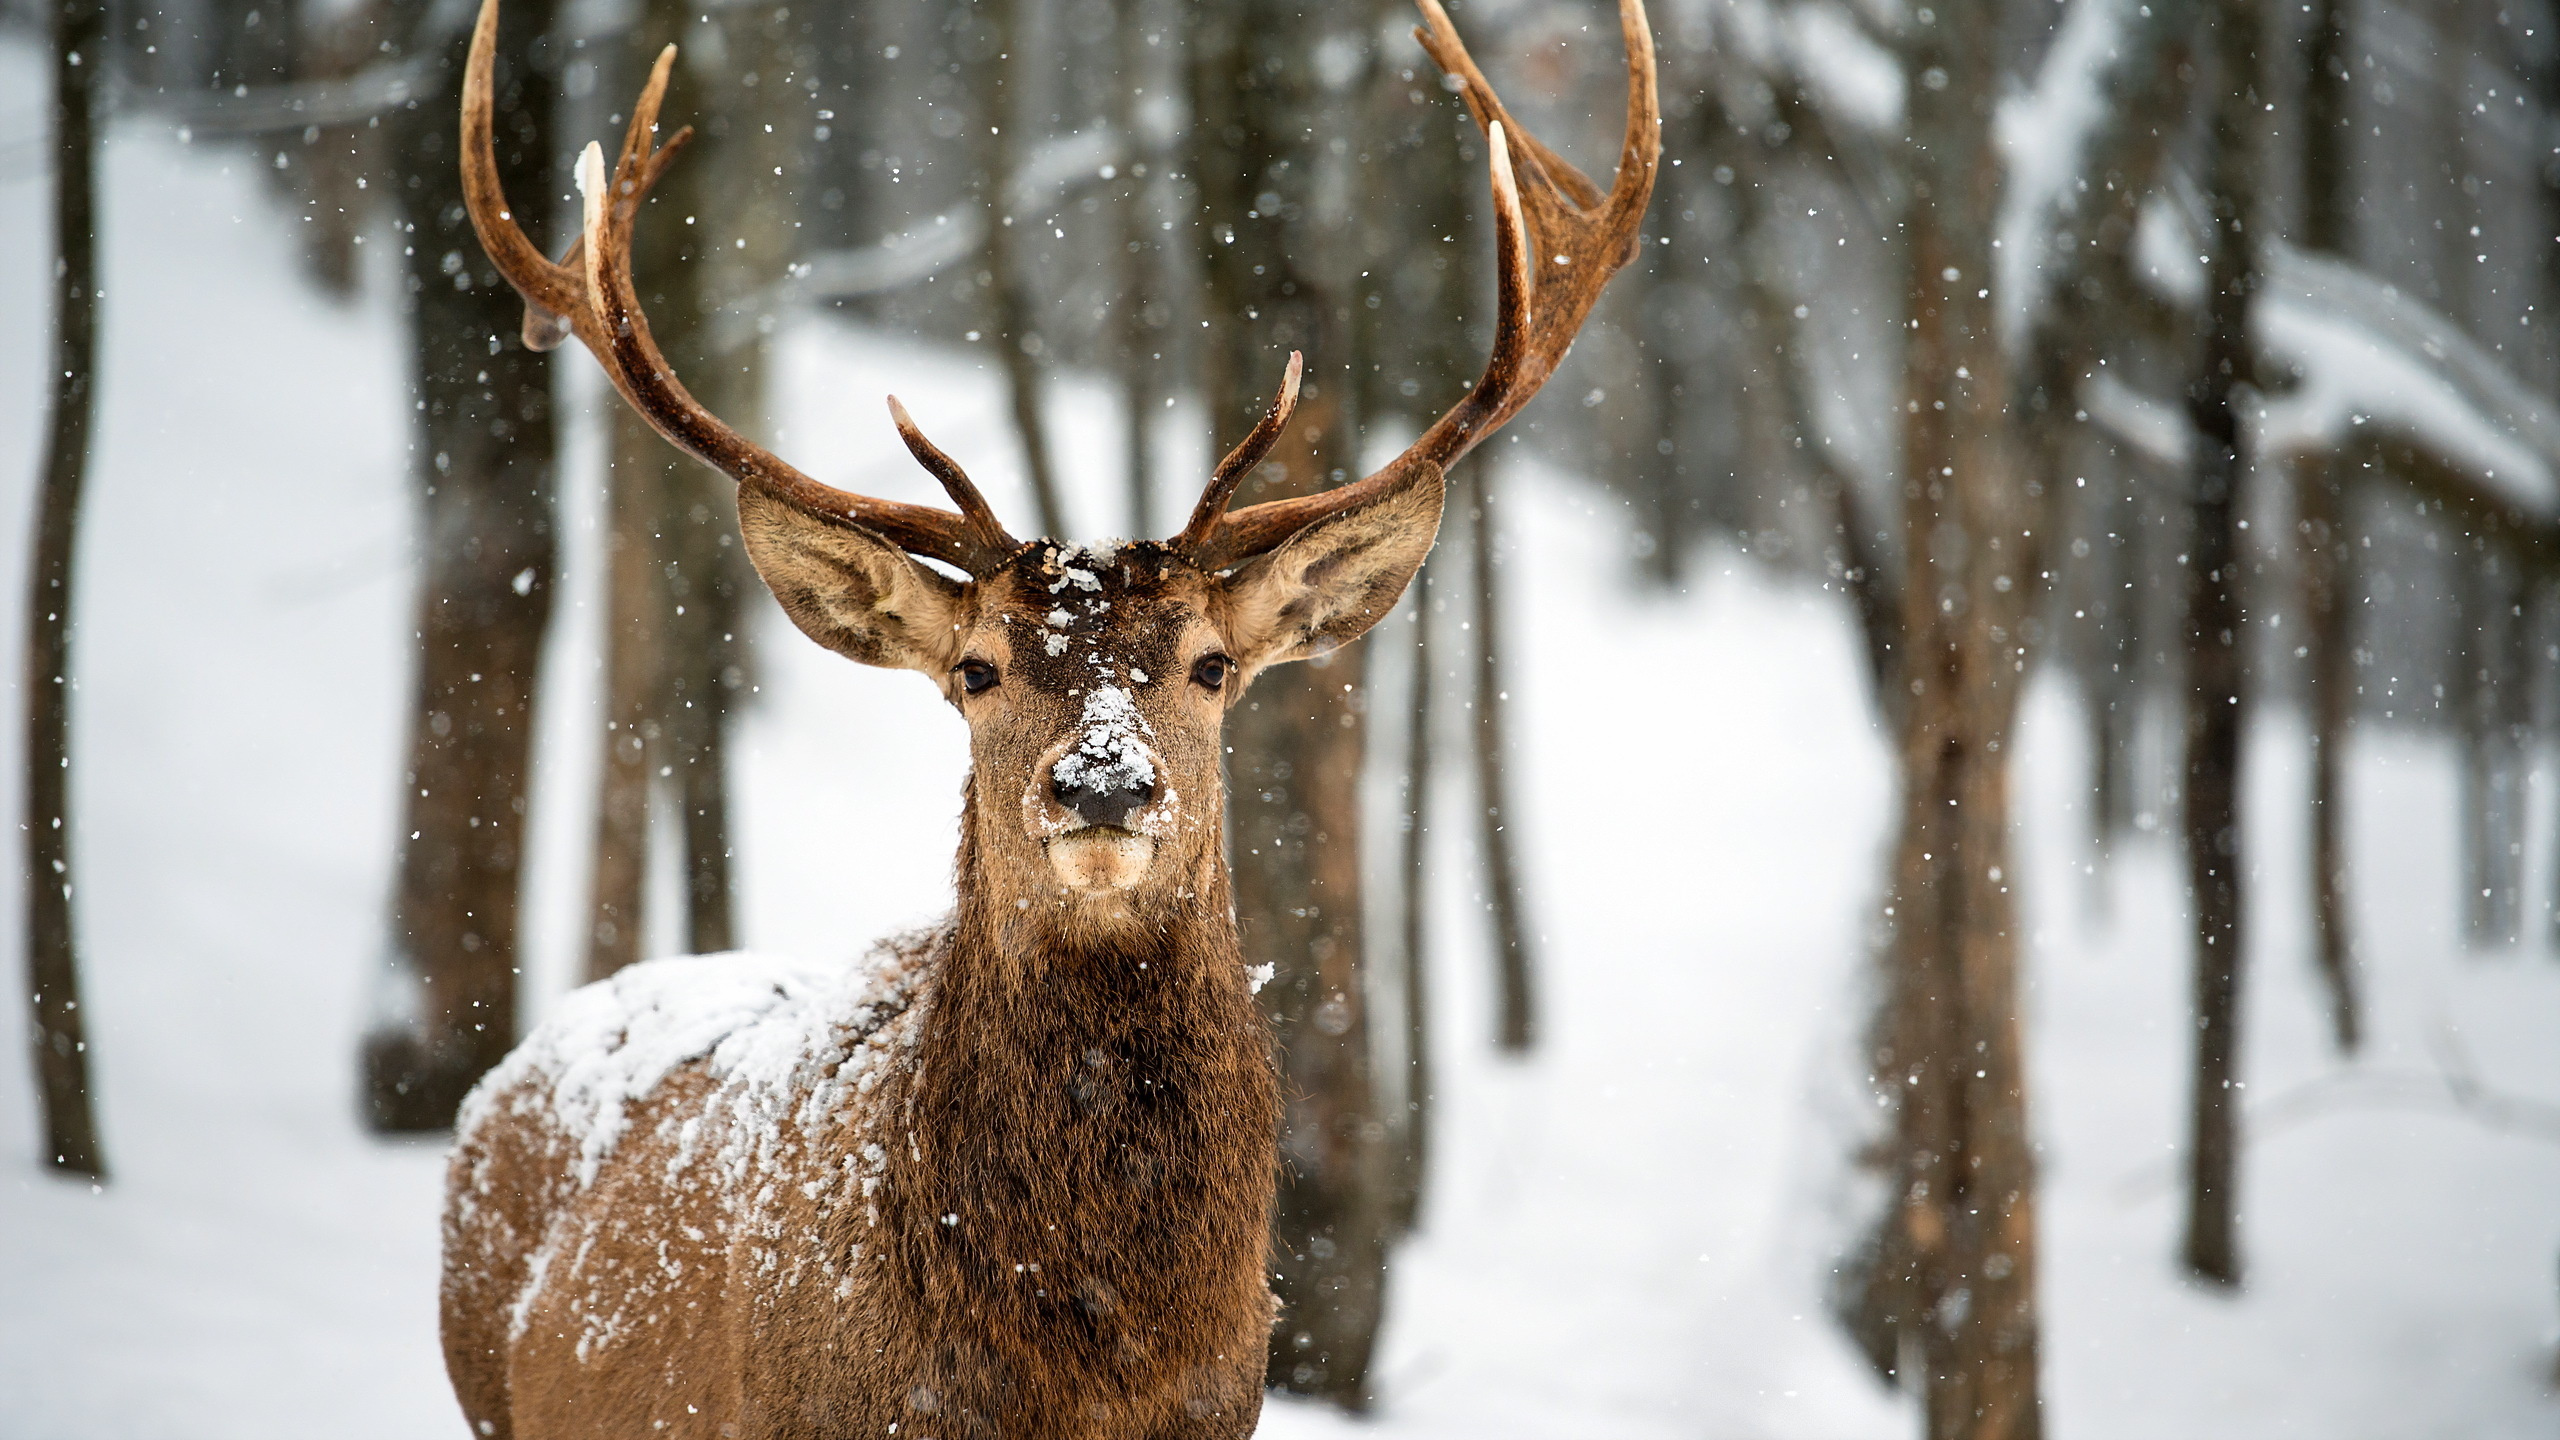 野生动物, 鹿角, 冬天, 冻结, 乌尔都语 壁纸 2560x1440 允许